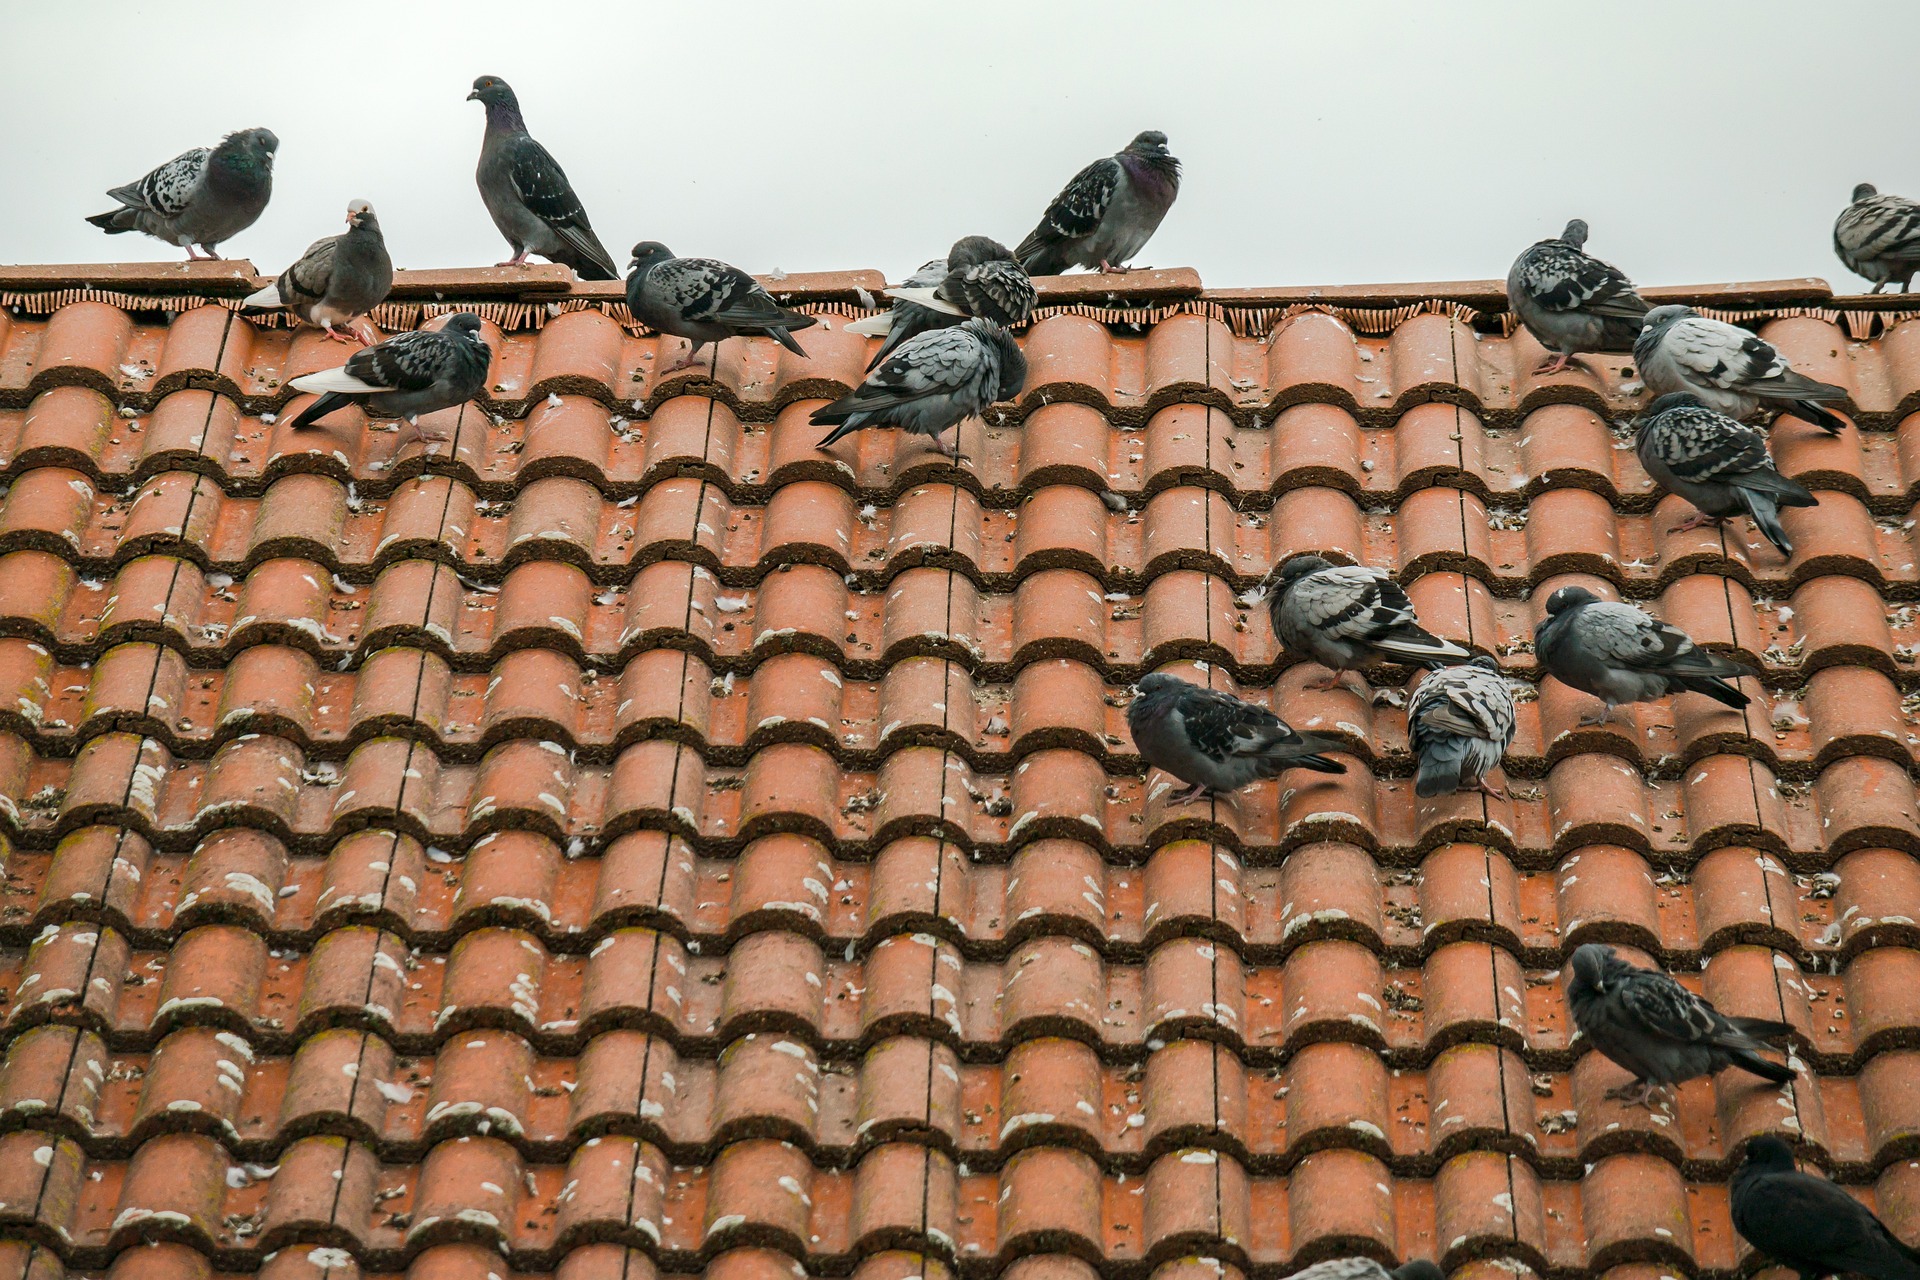 groupe de pigeons sur un toit